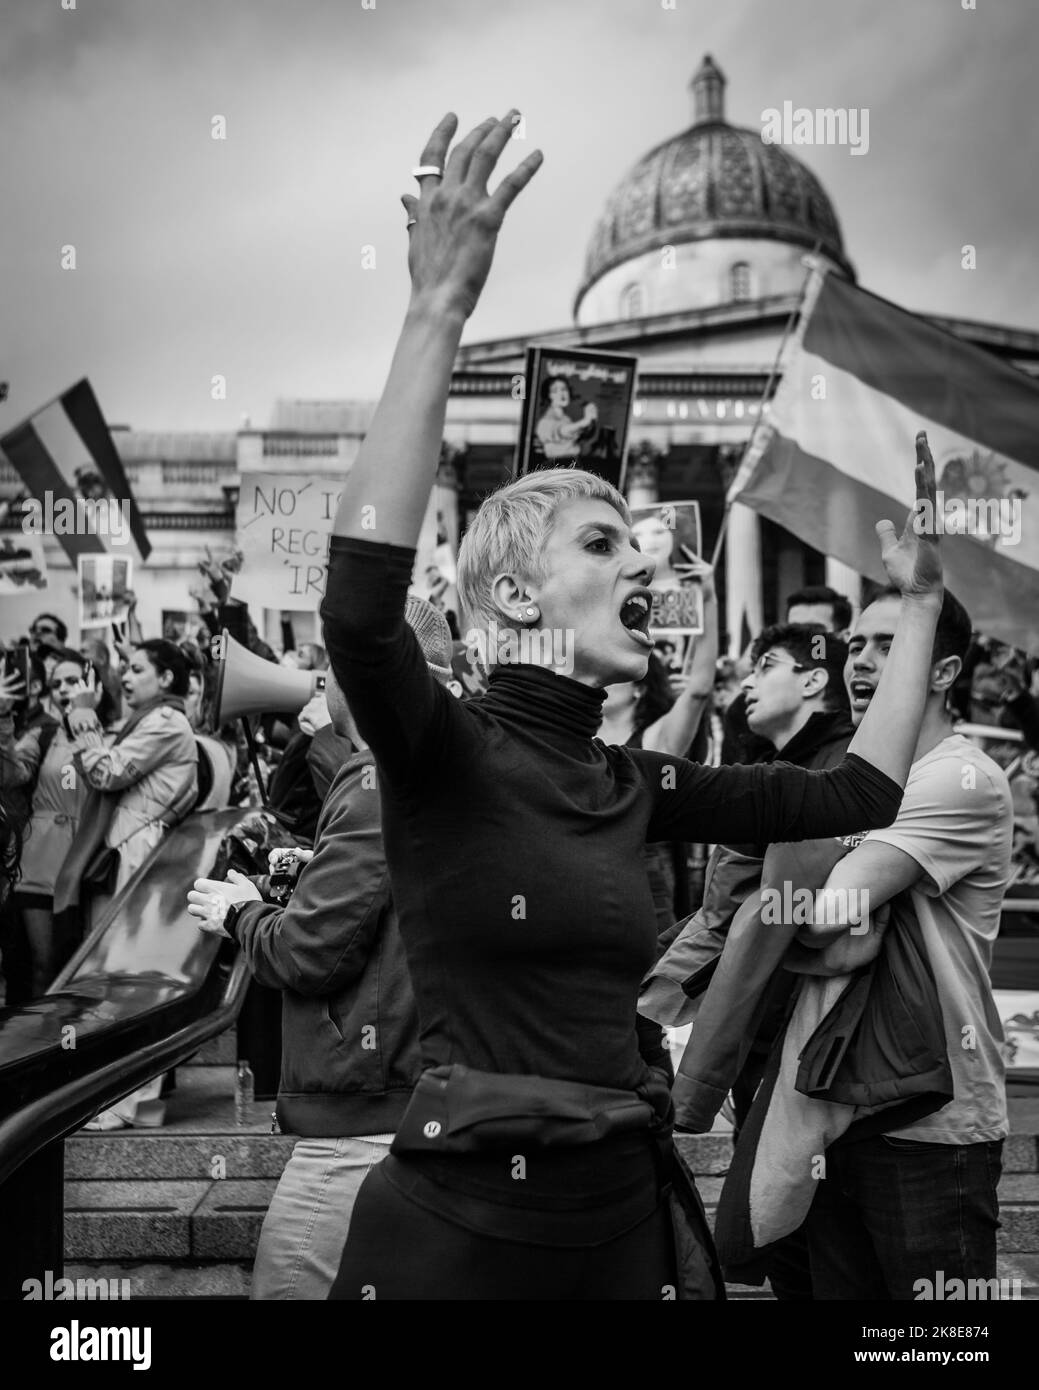 Wut über die Proteste „Woman, Life, Freedom“ bei der iranischen Solidaritätsveranstaltung am Londoner Trafalgar Square. Stockfoto